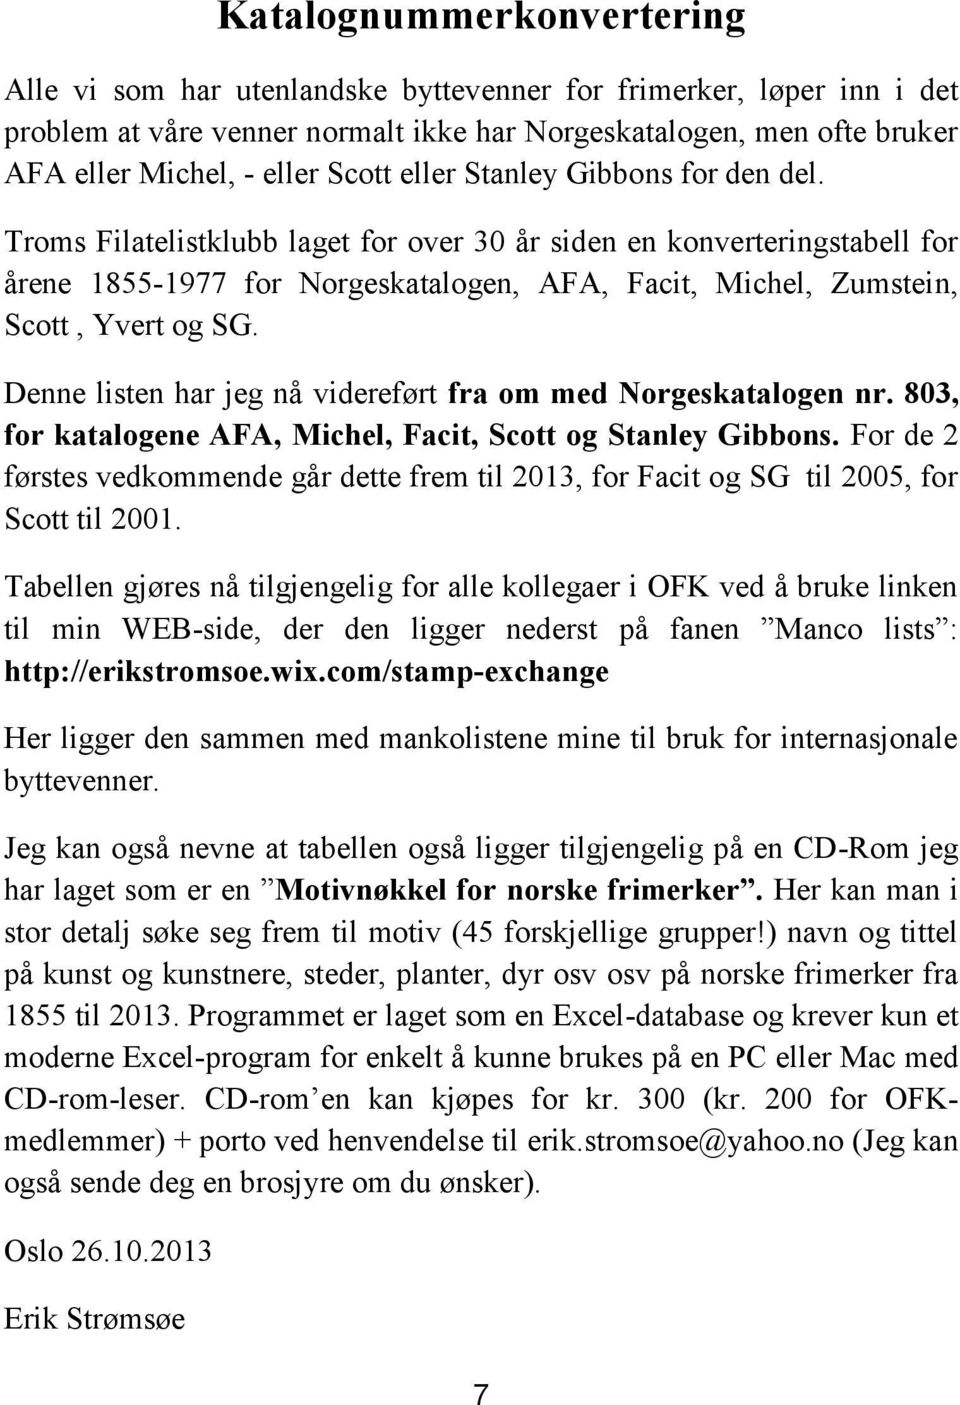 Troms Filatelistklubb laget for over 30 år siden en konverteringstabell for årene 1855-1977 for Norgeskatalogen, AFA, Facit, Michel, Zumstein, Scott, Yvert og SG.